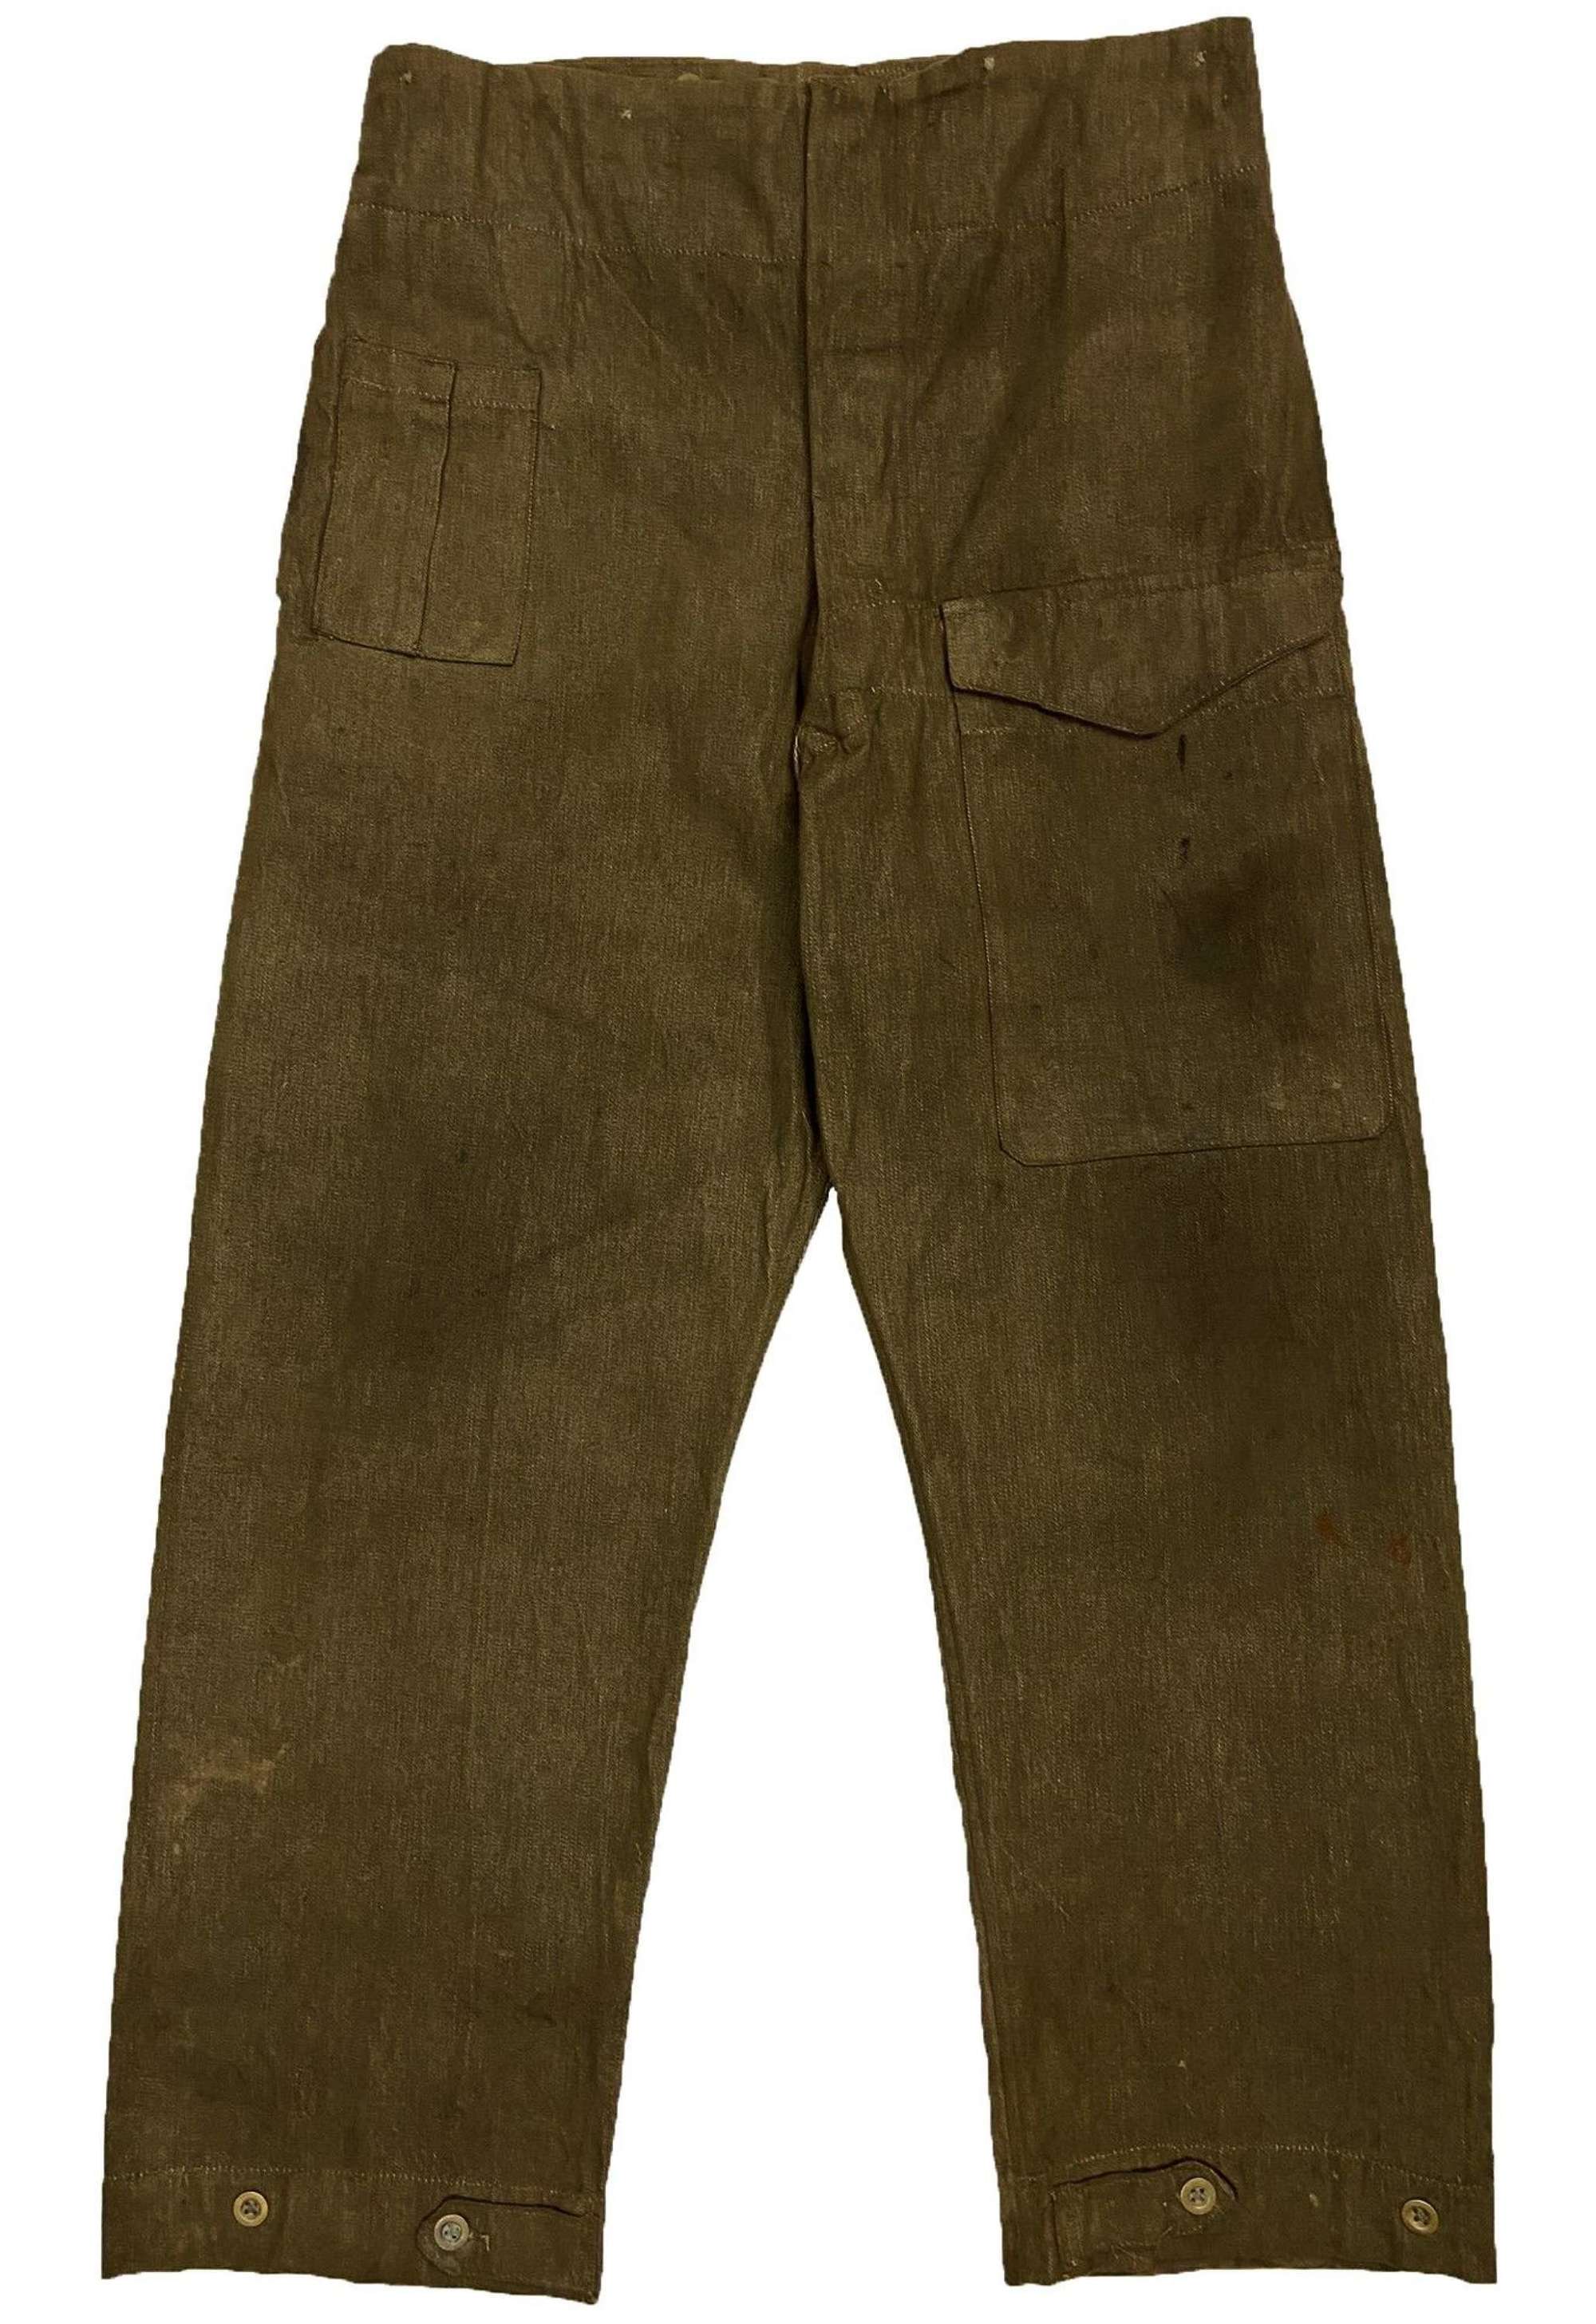 Scarce Original 1940 Dated First Pattern Denim Battledress Trousers